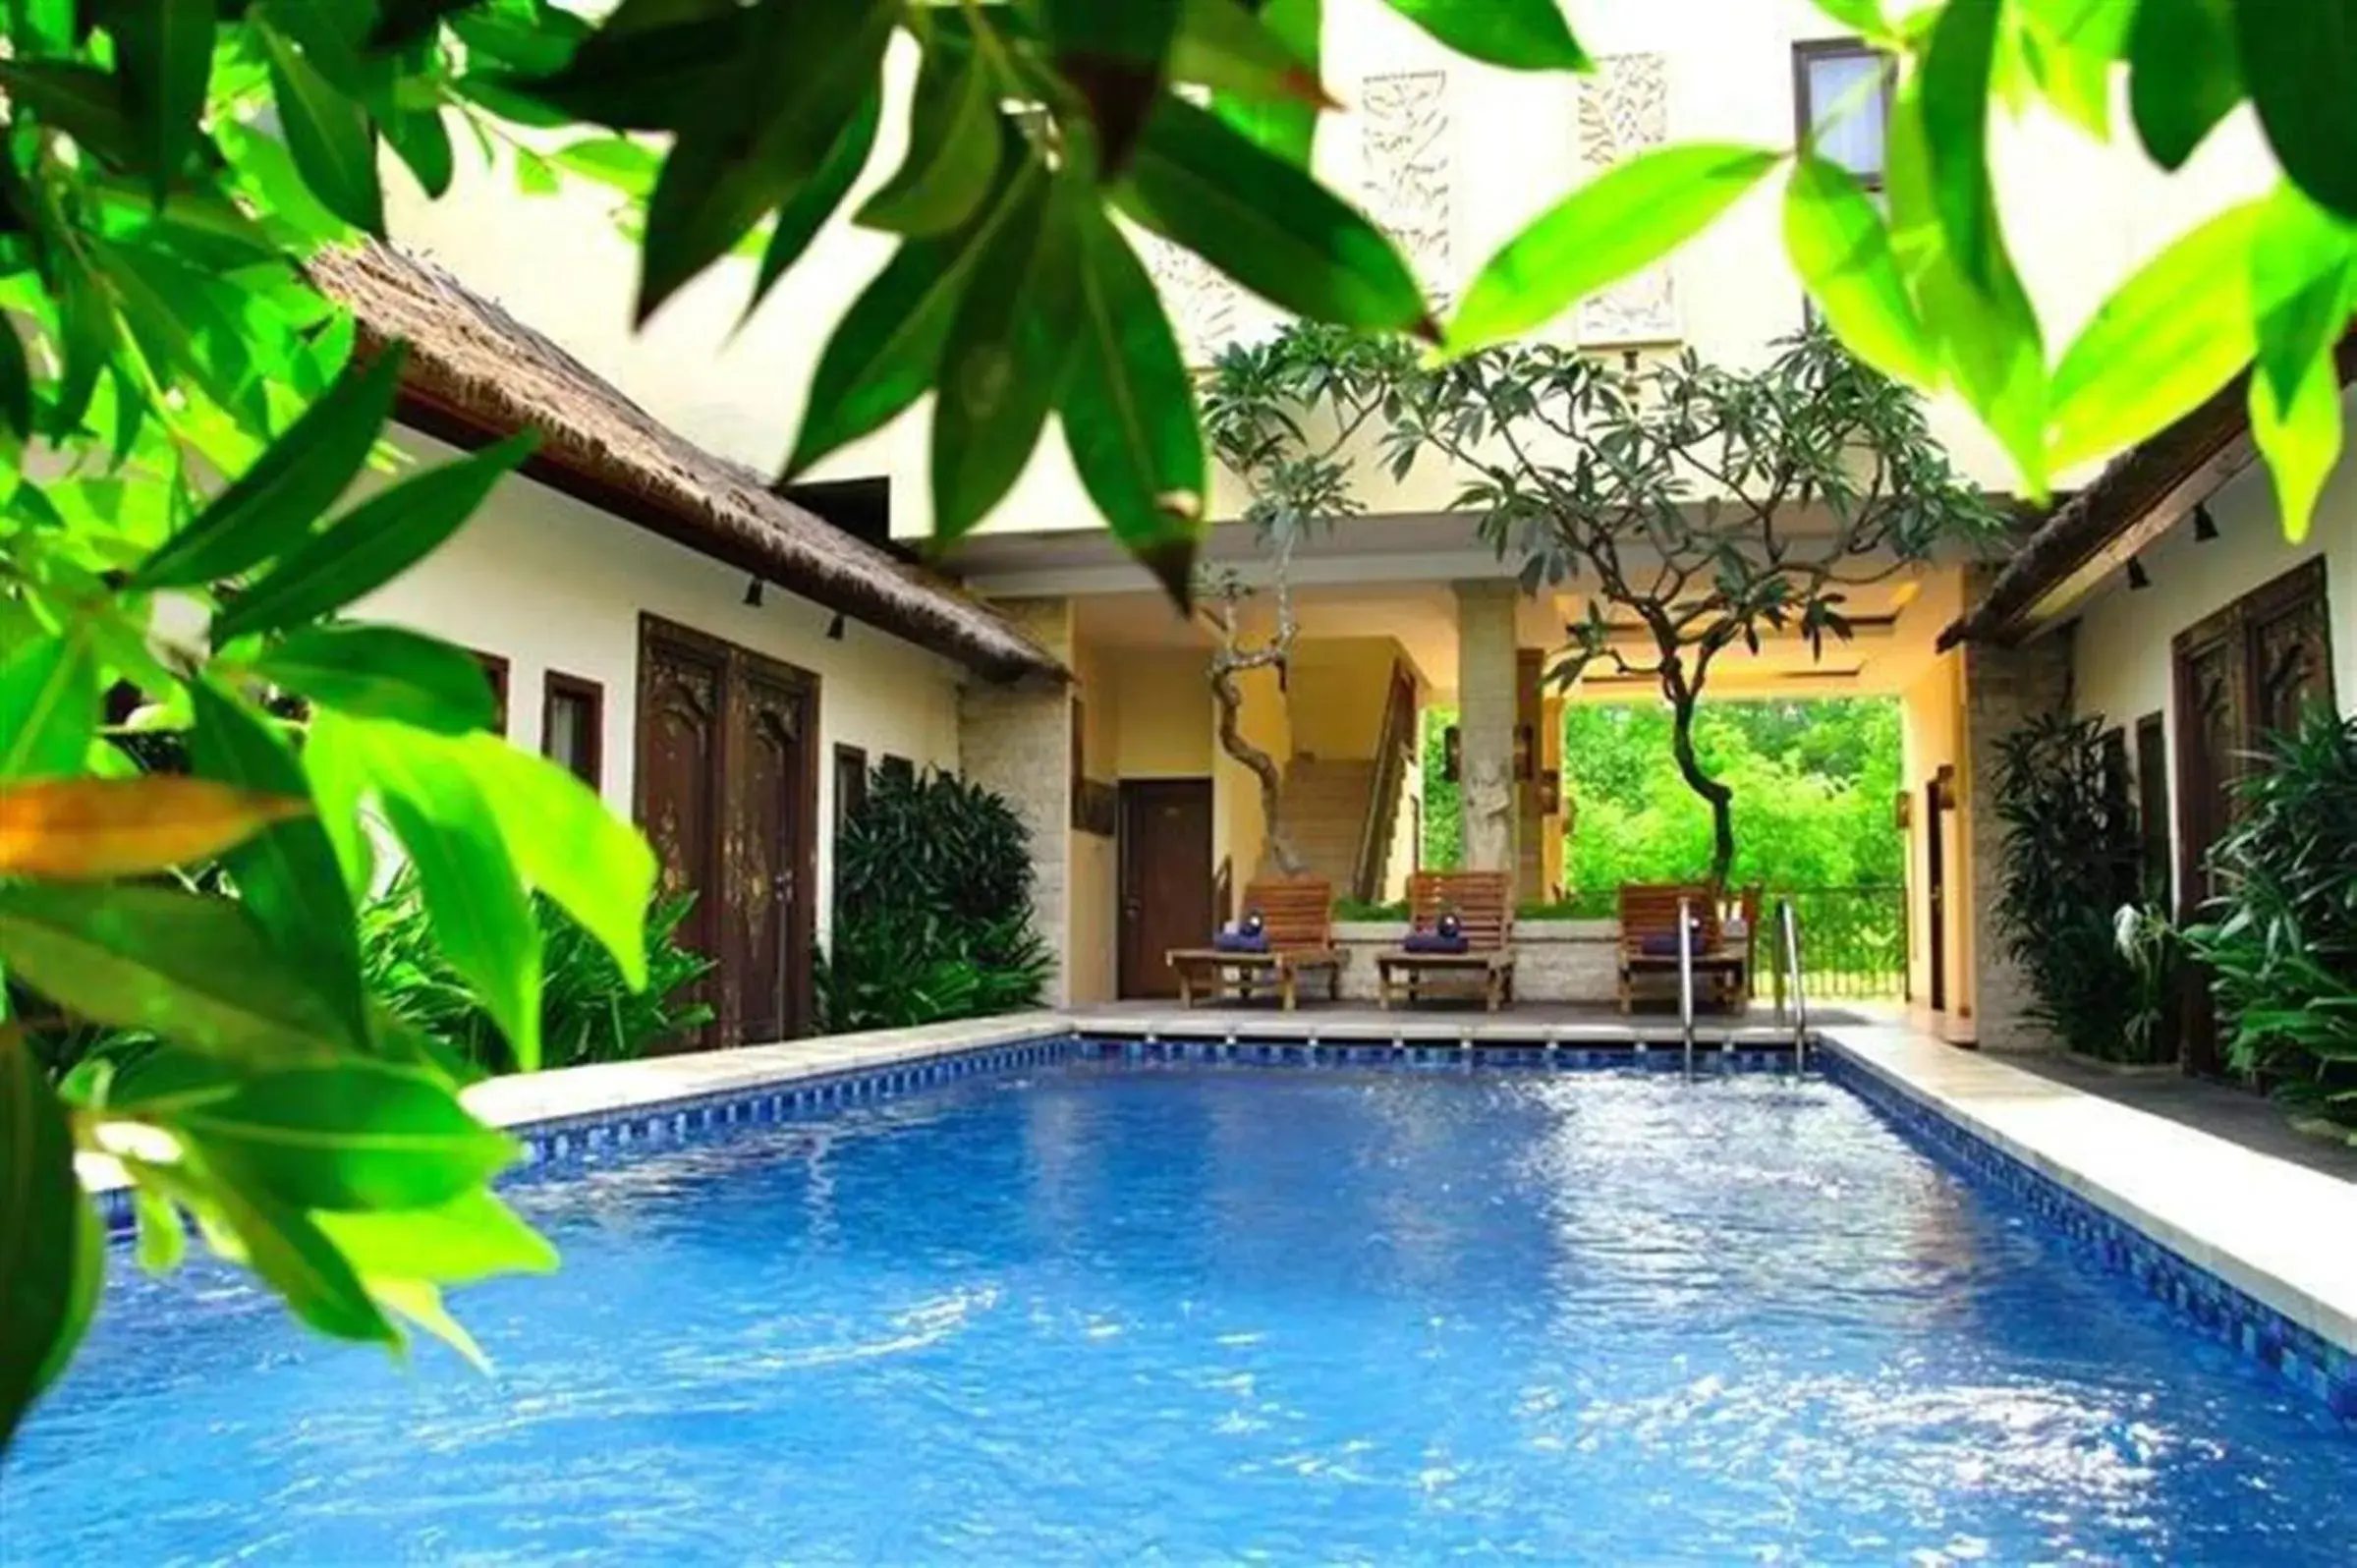 Swimming Pool in Coco de Heaven Hotel